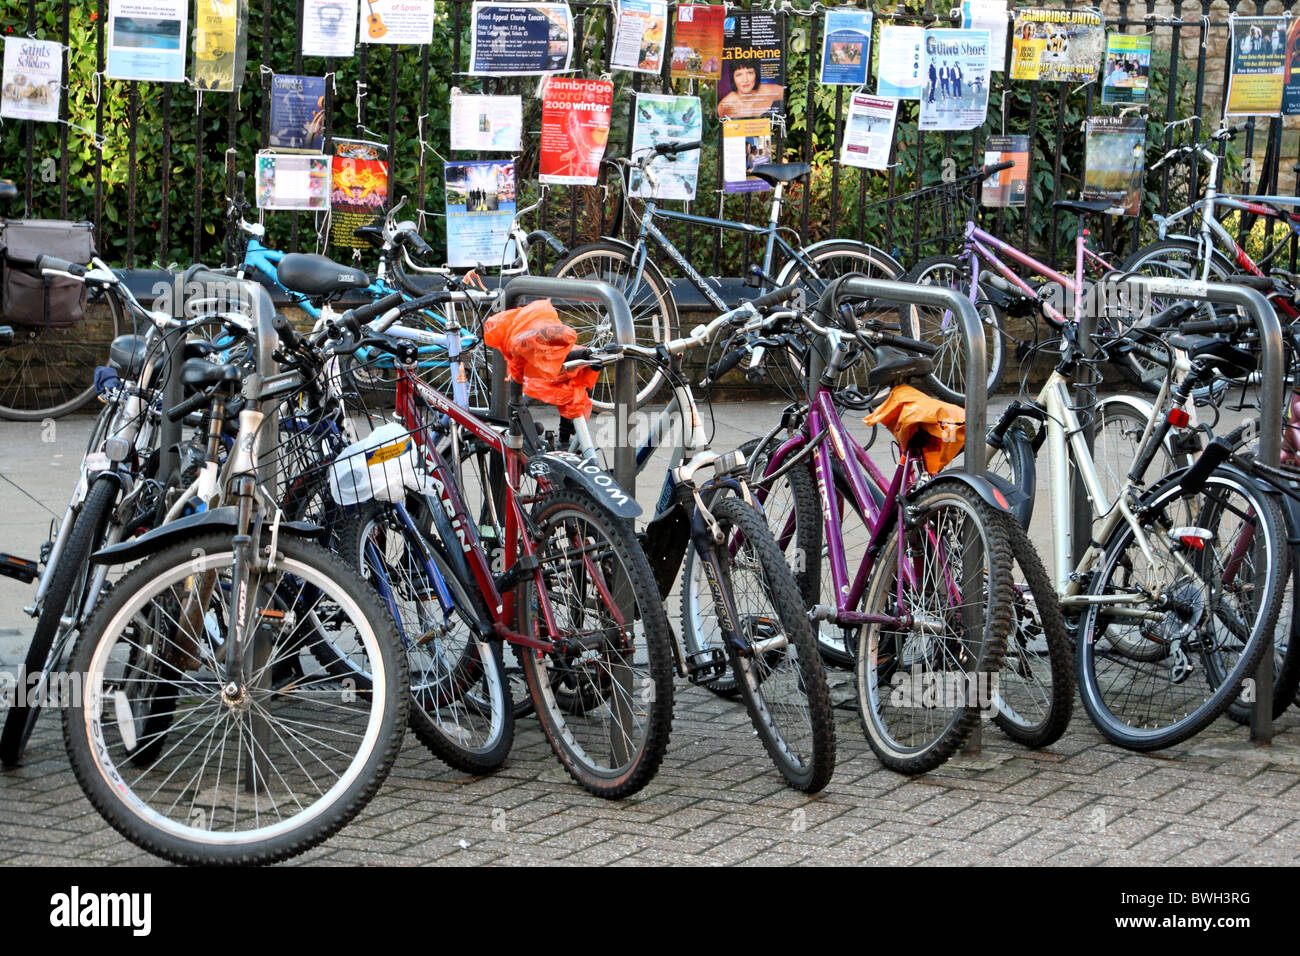 University student bicycles in Cambridge Stock Photo